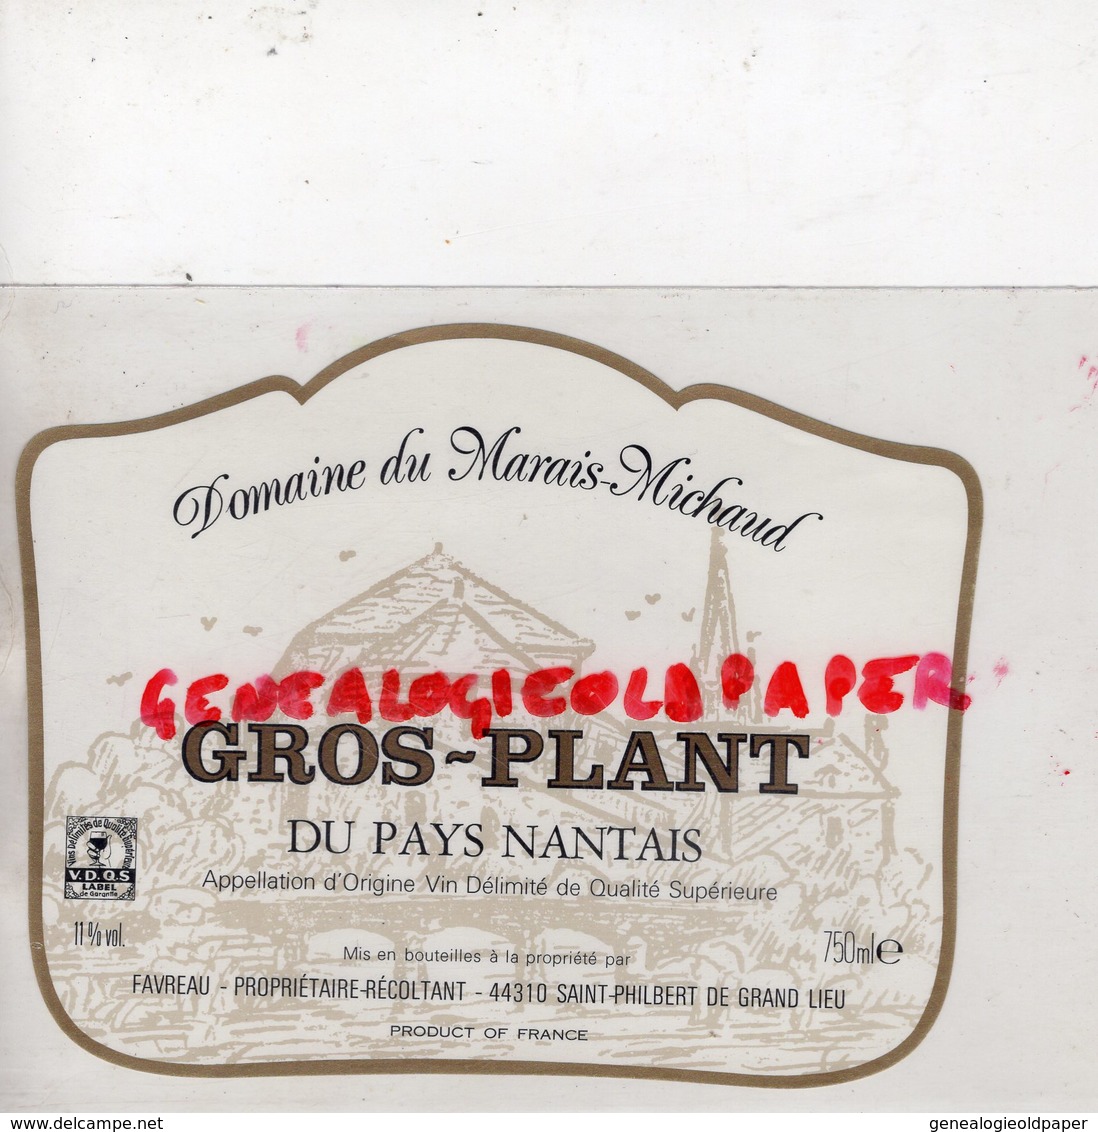 44- ST SAINT PHILBERT DE GRAND LIEU- RARE ETIQUETTE DOMAINE DU MARAIS MICHAUD -GROS PLANT PAYS NANTAIS-FAVREAU - Vino Bianco